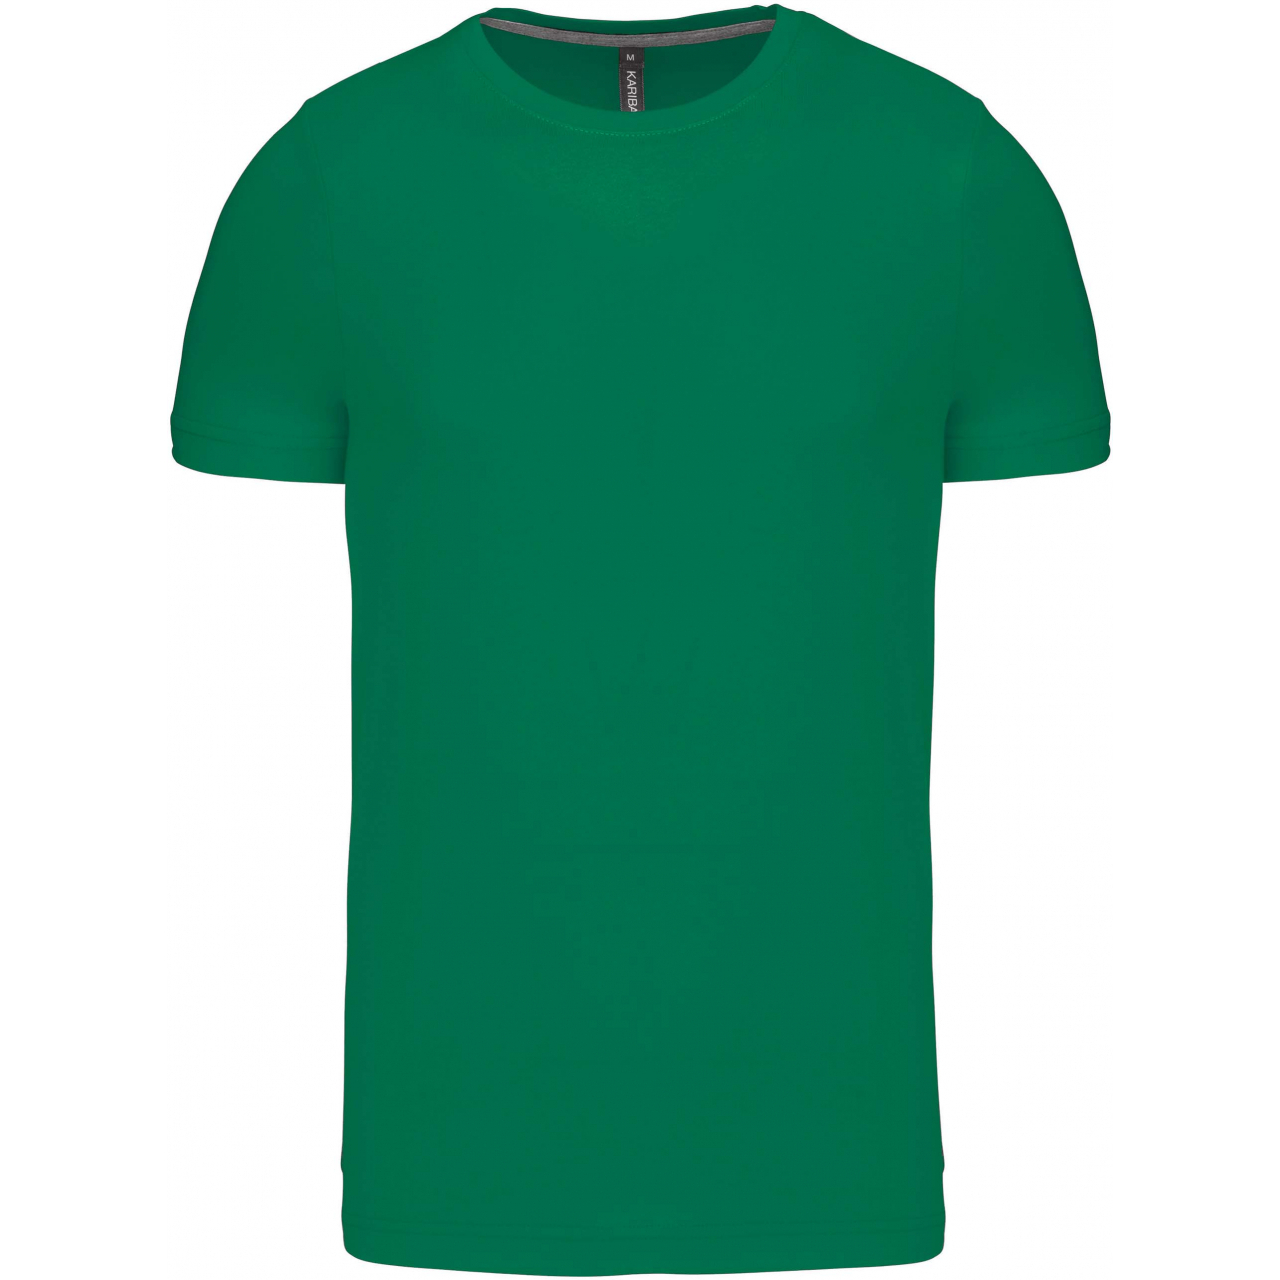 Pánské tričko Kariban krátký rukáv - zelené, M